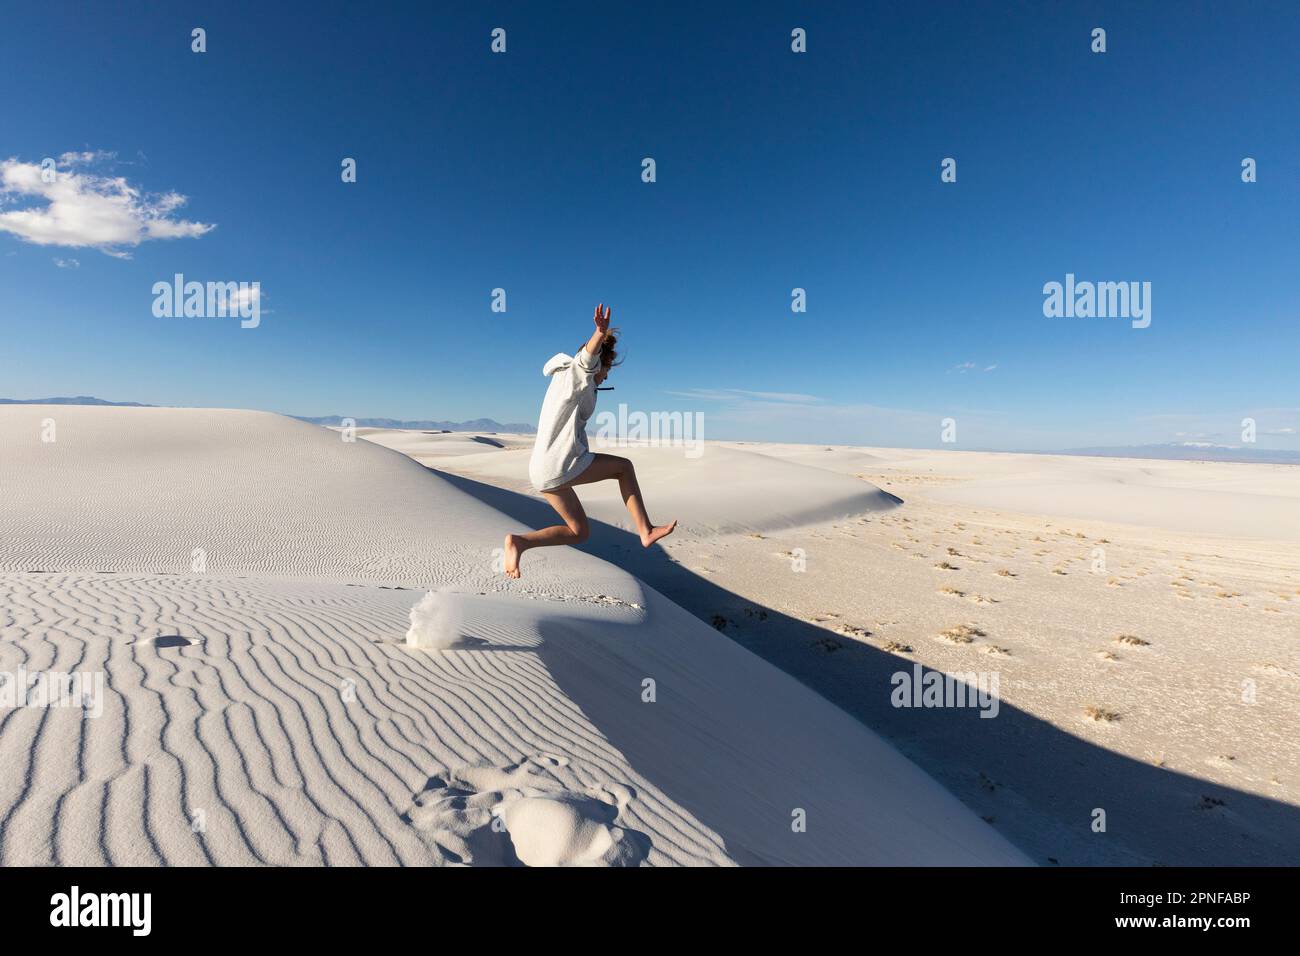 États-Unis, Nouveau-Mexique, parc national de White Sands, jeune fille qui bondit sur des dunes de sable Banque D'Images